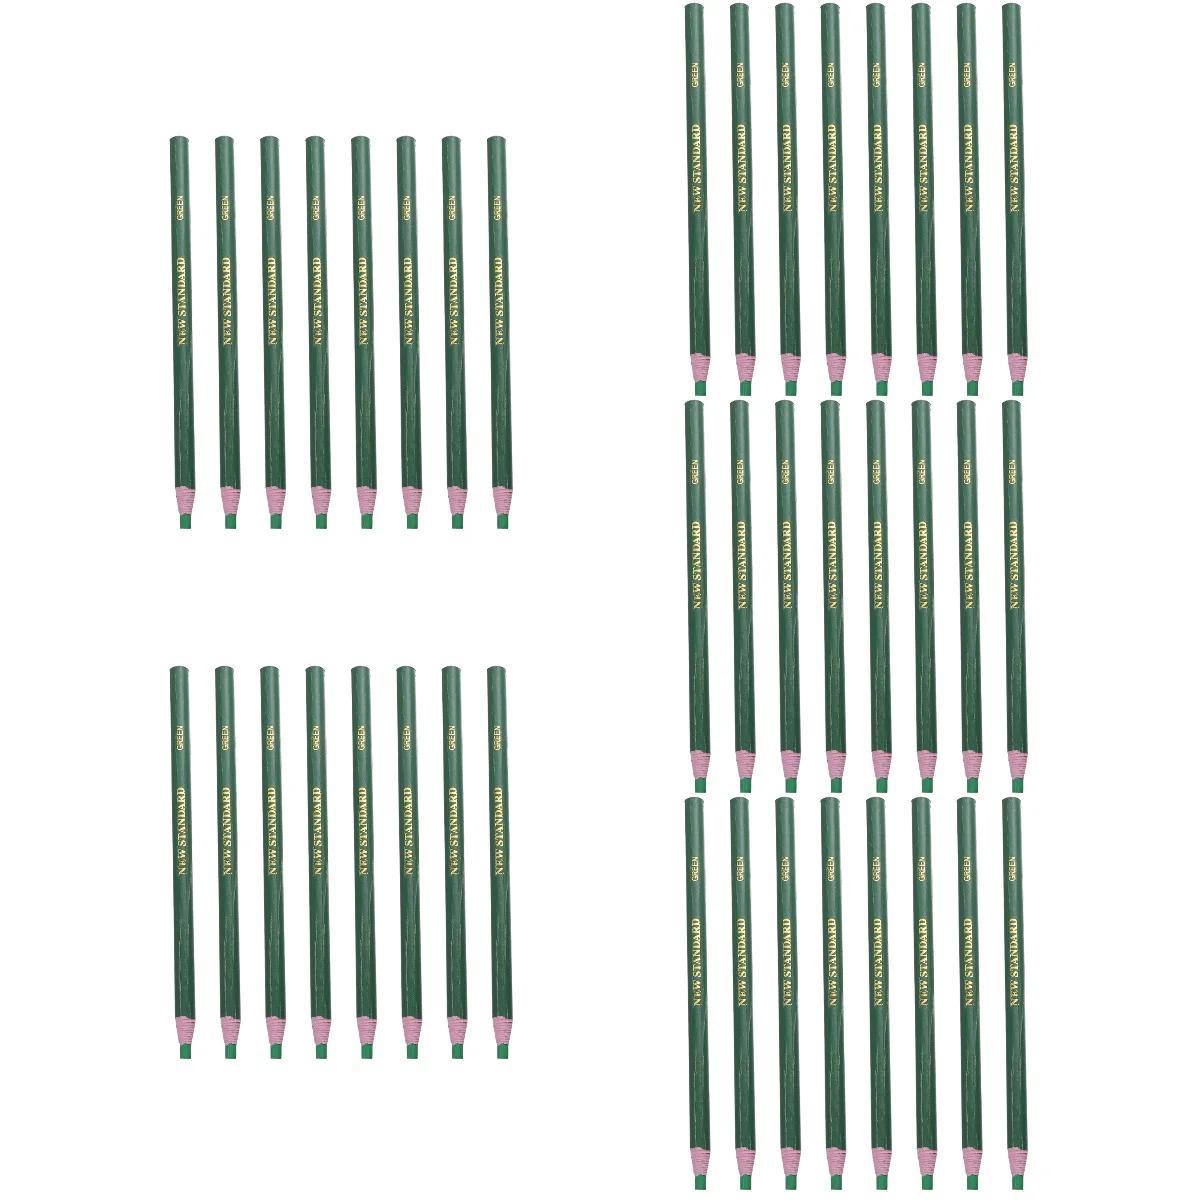 떼기 쉬운 왁스 펜, 세라믹 유리 천, 금속 목재 (녹색) 마커, 60 개